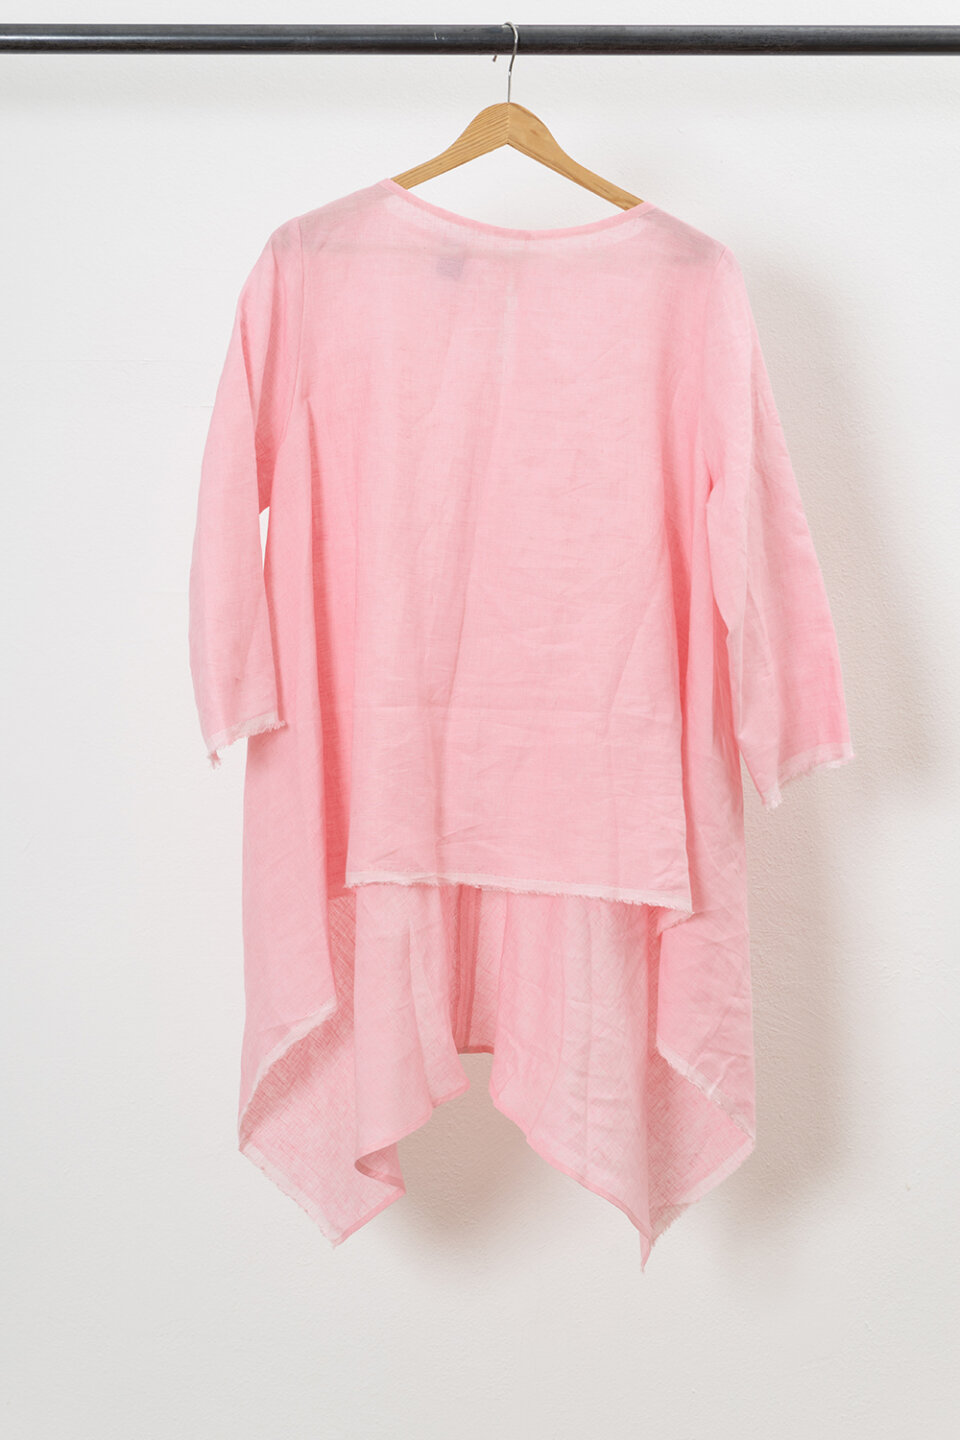 Camicia Giulia Lunga rosa 1 1 - Officinae